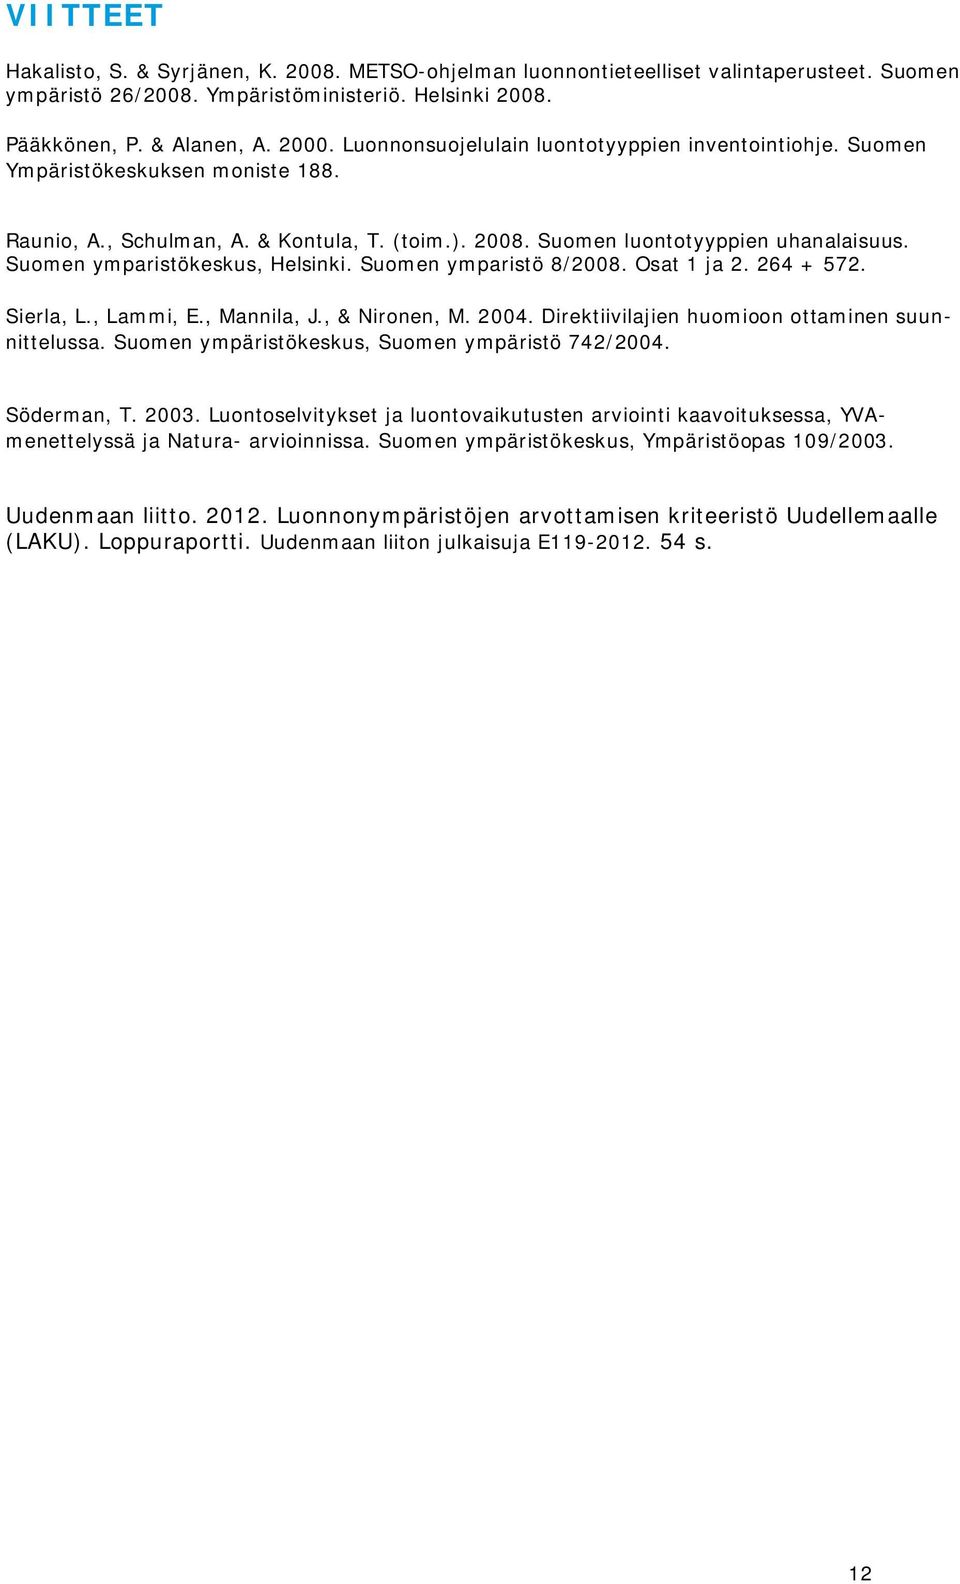 Suomen ymparistökeskus, Helsinki. Suomen ymparistö 8/2008. Osat 1 ja 2. 264 + 572. Sierla, L., Lammi, E., Mannila, J., & Nironen, M. 2004. Direktiivilajien huomioon ottaminen suunnittelussa.